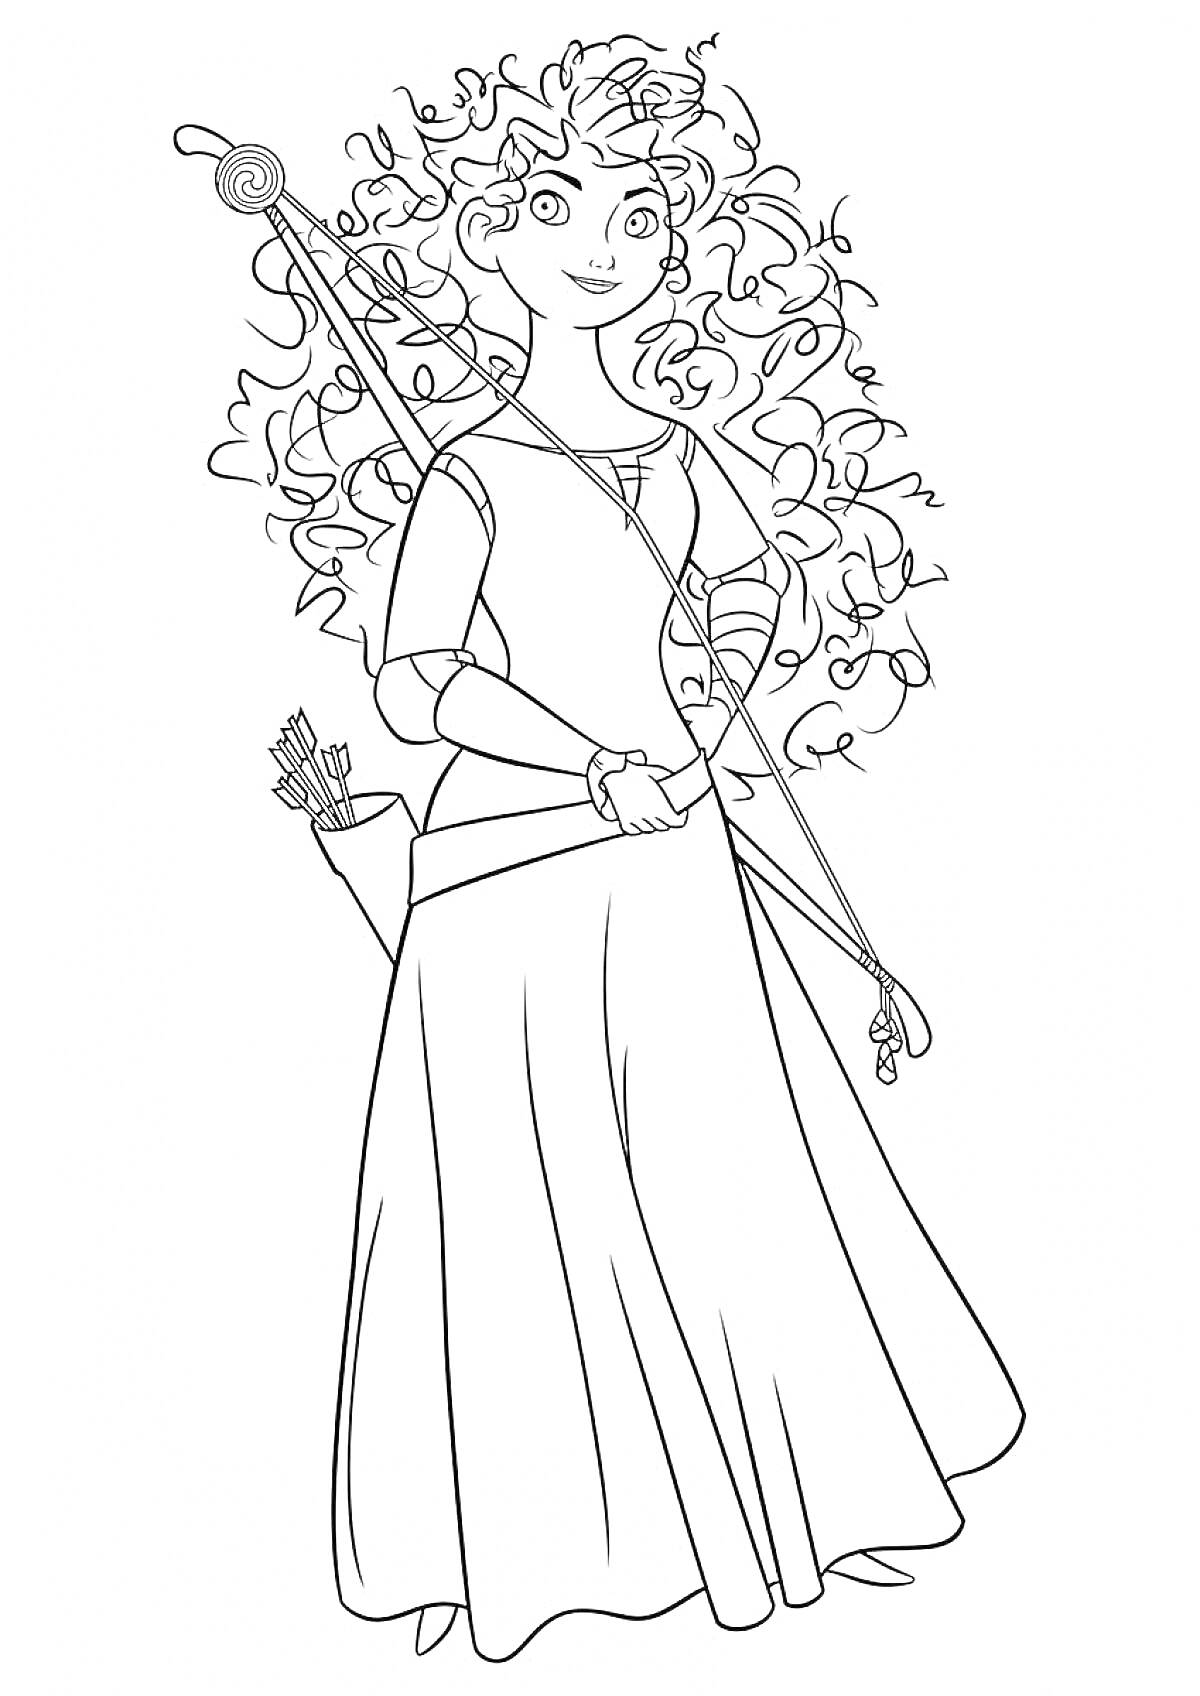 Раскраска Принцесса с луком и стрелами, длинное кудрявое распущенное волосы, в длинном платье с рукавами